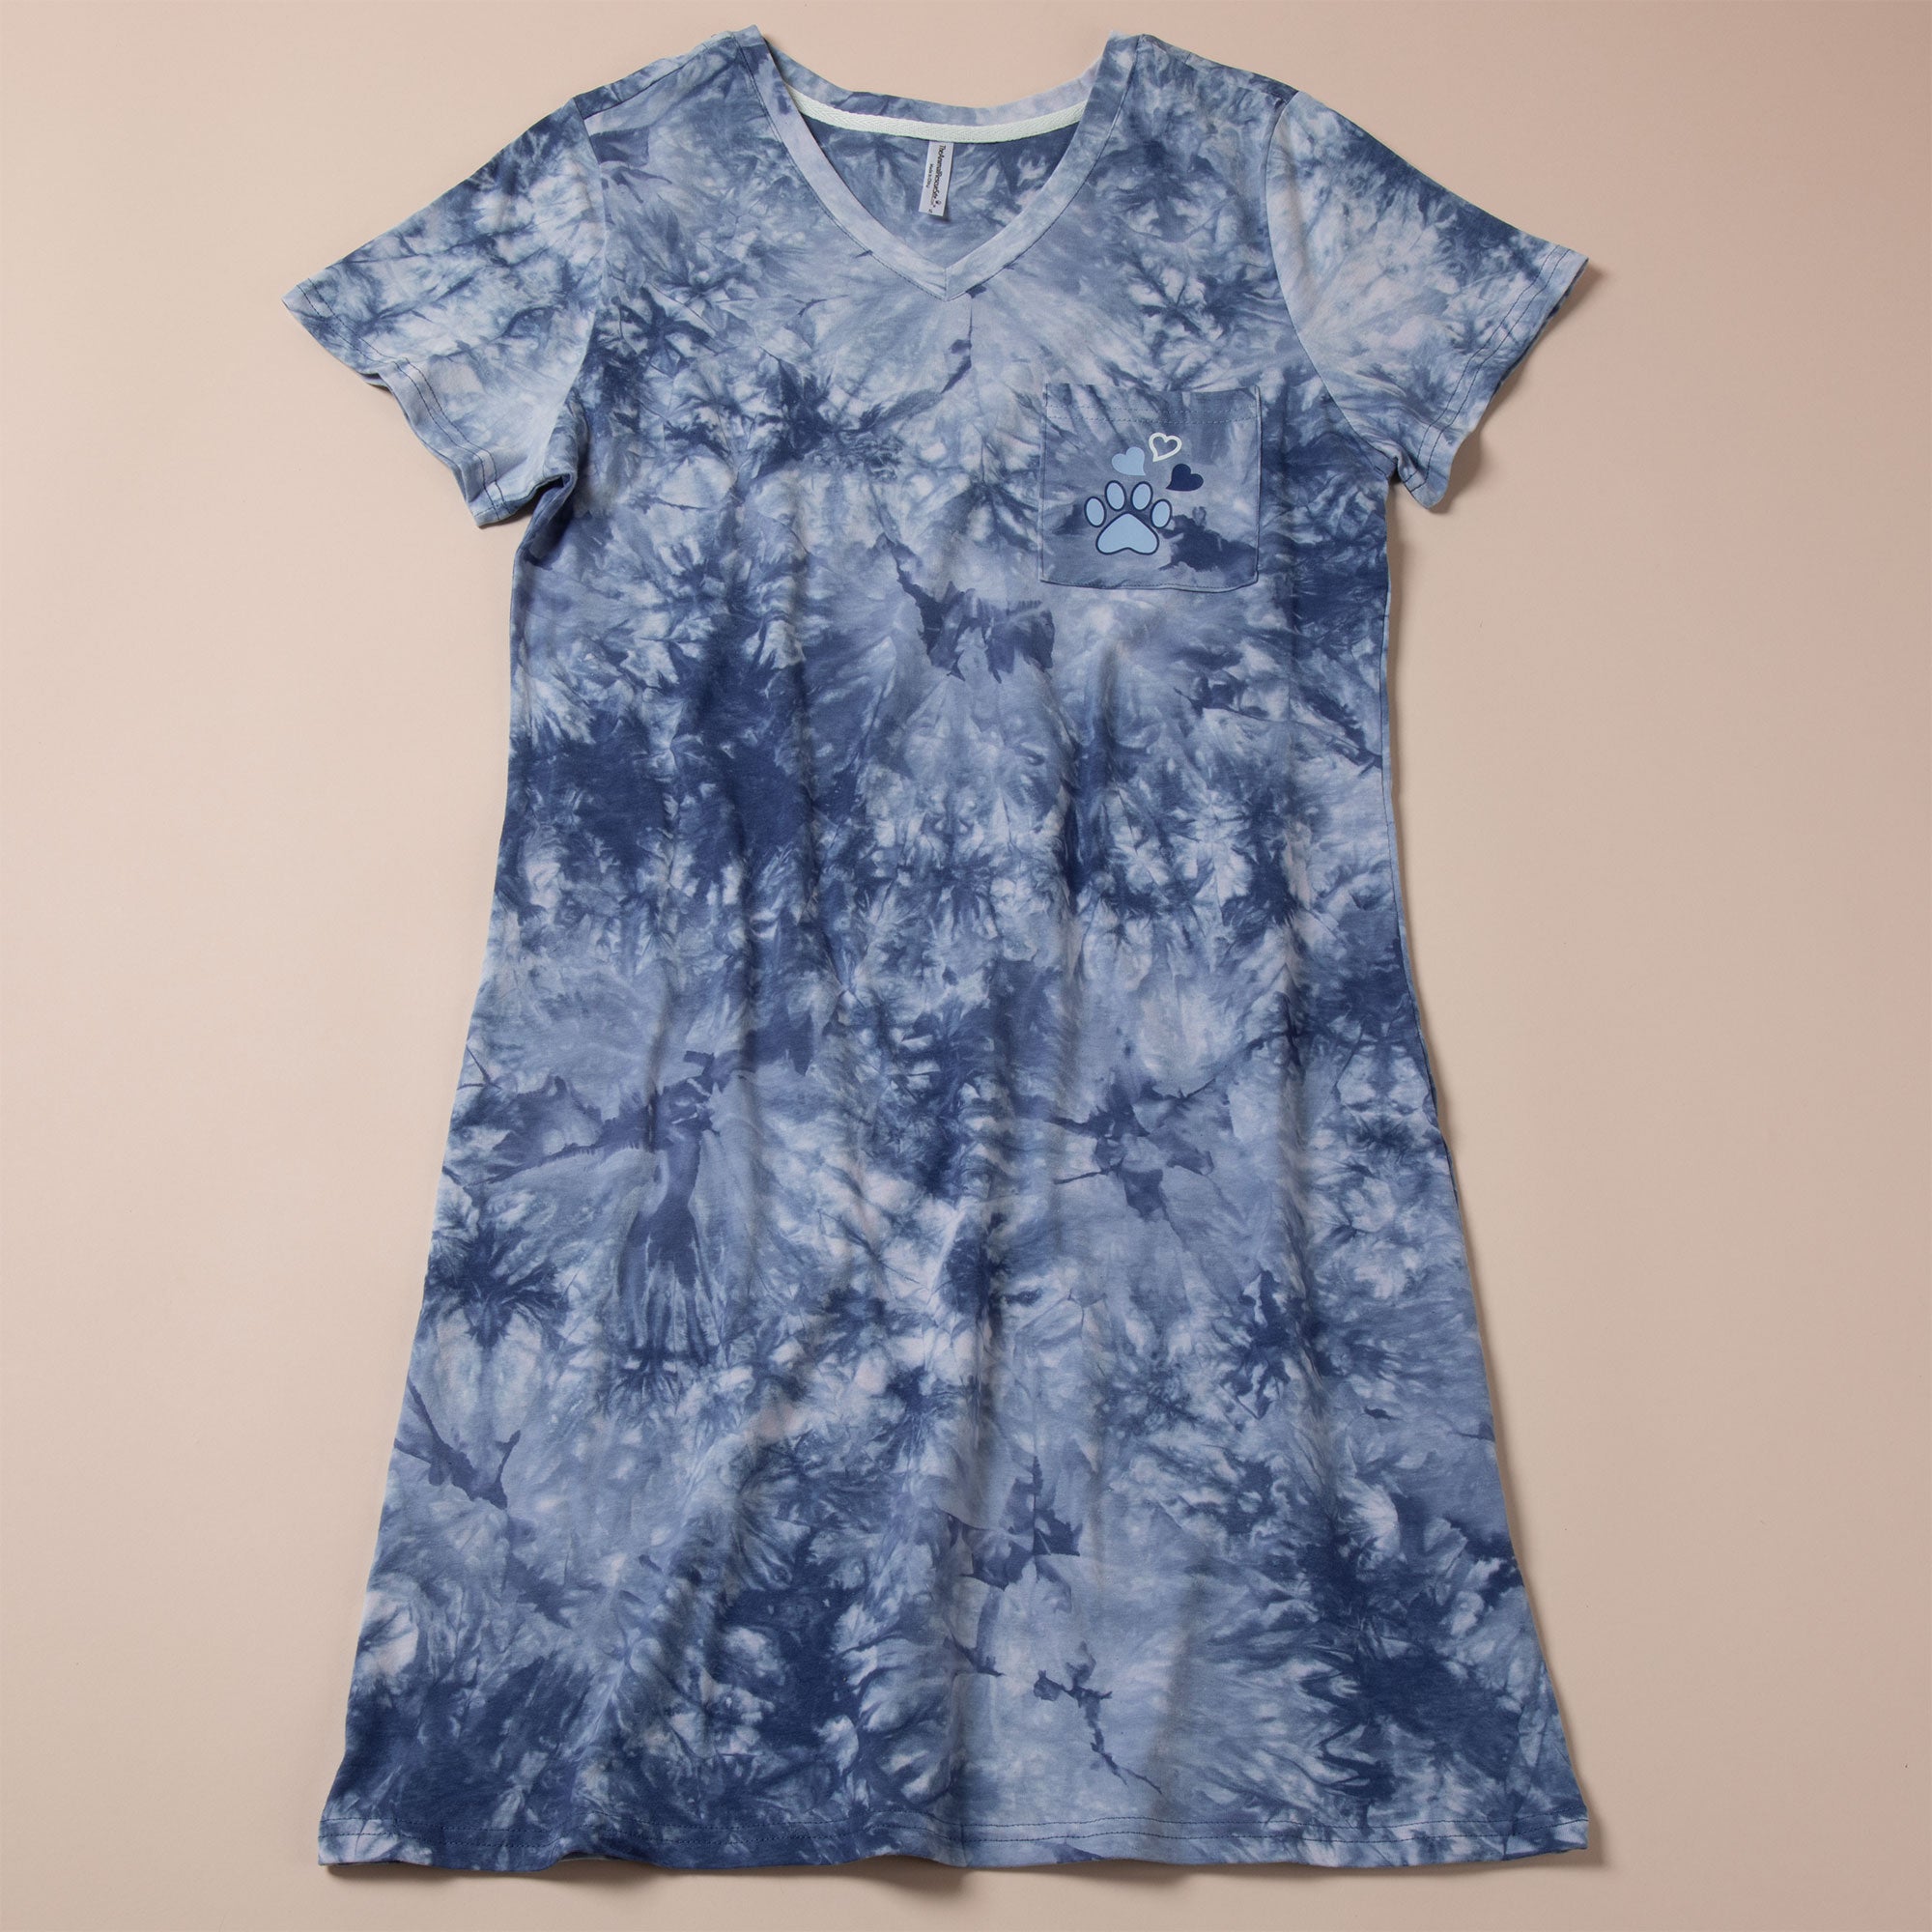 Paw Print Tie-Dye T-Shirt Dress - L